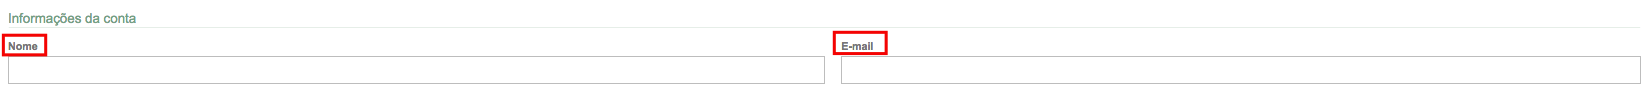 Adicione nome e email